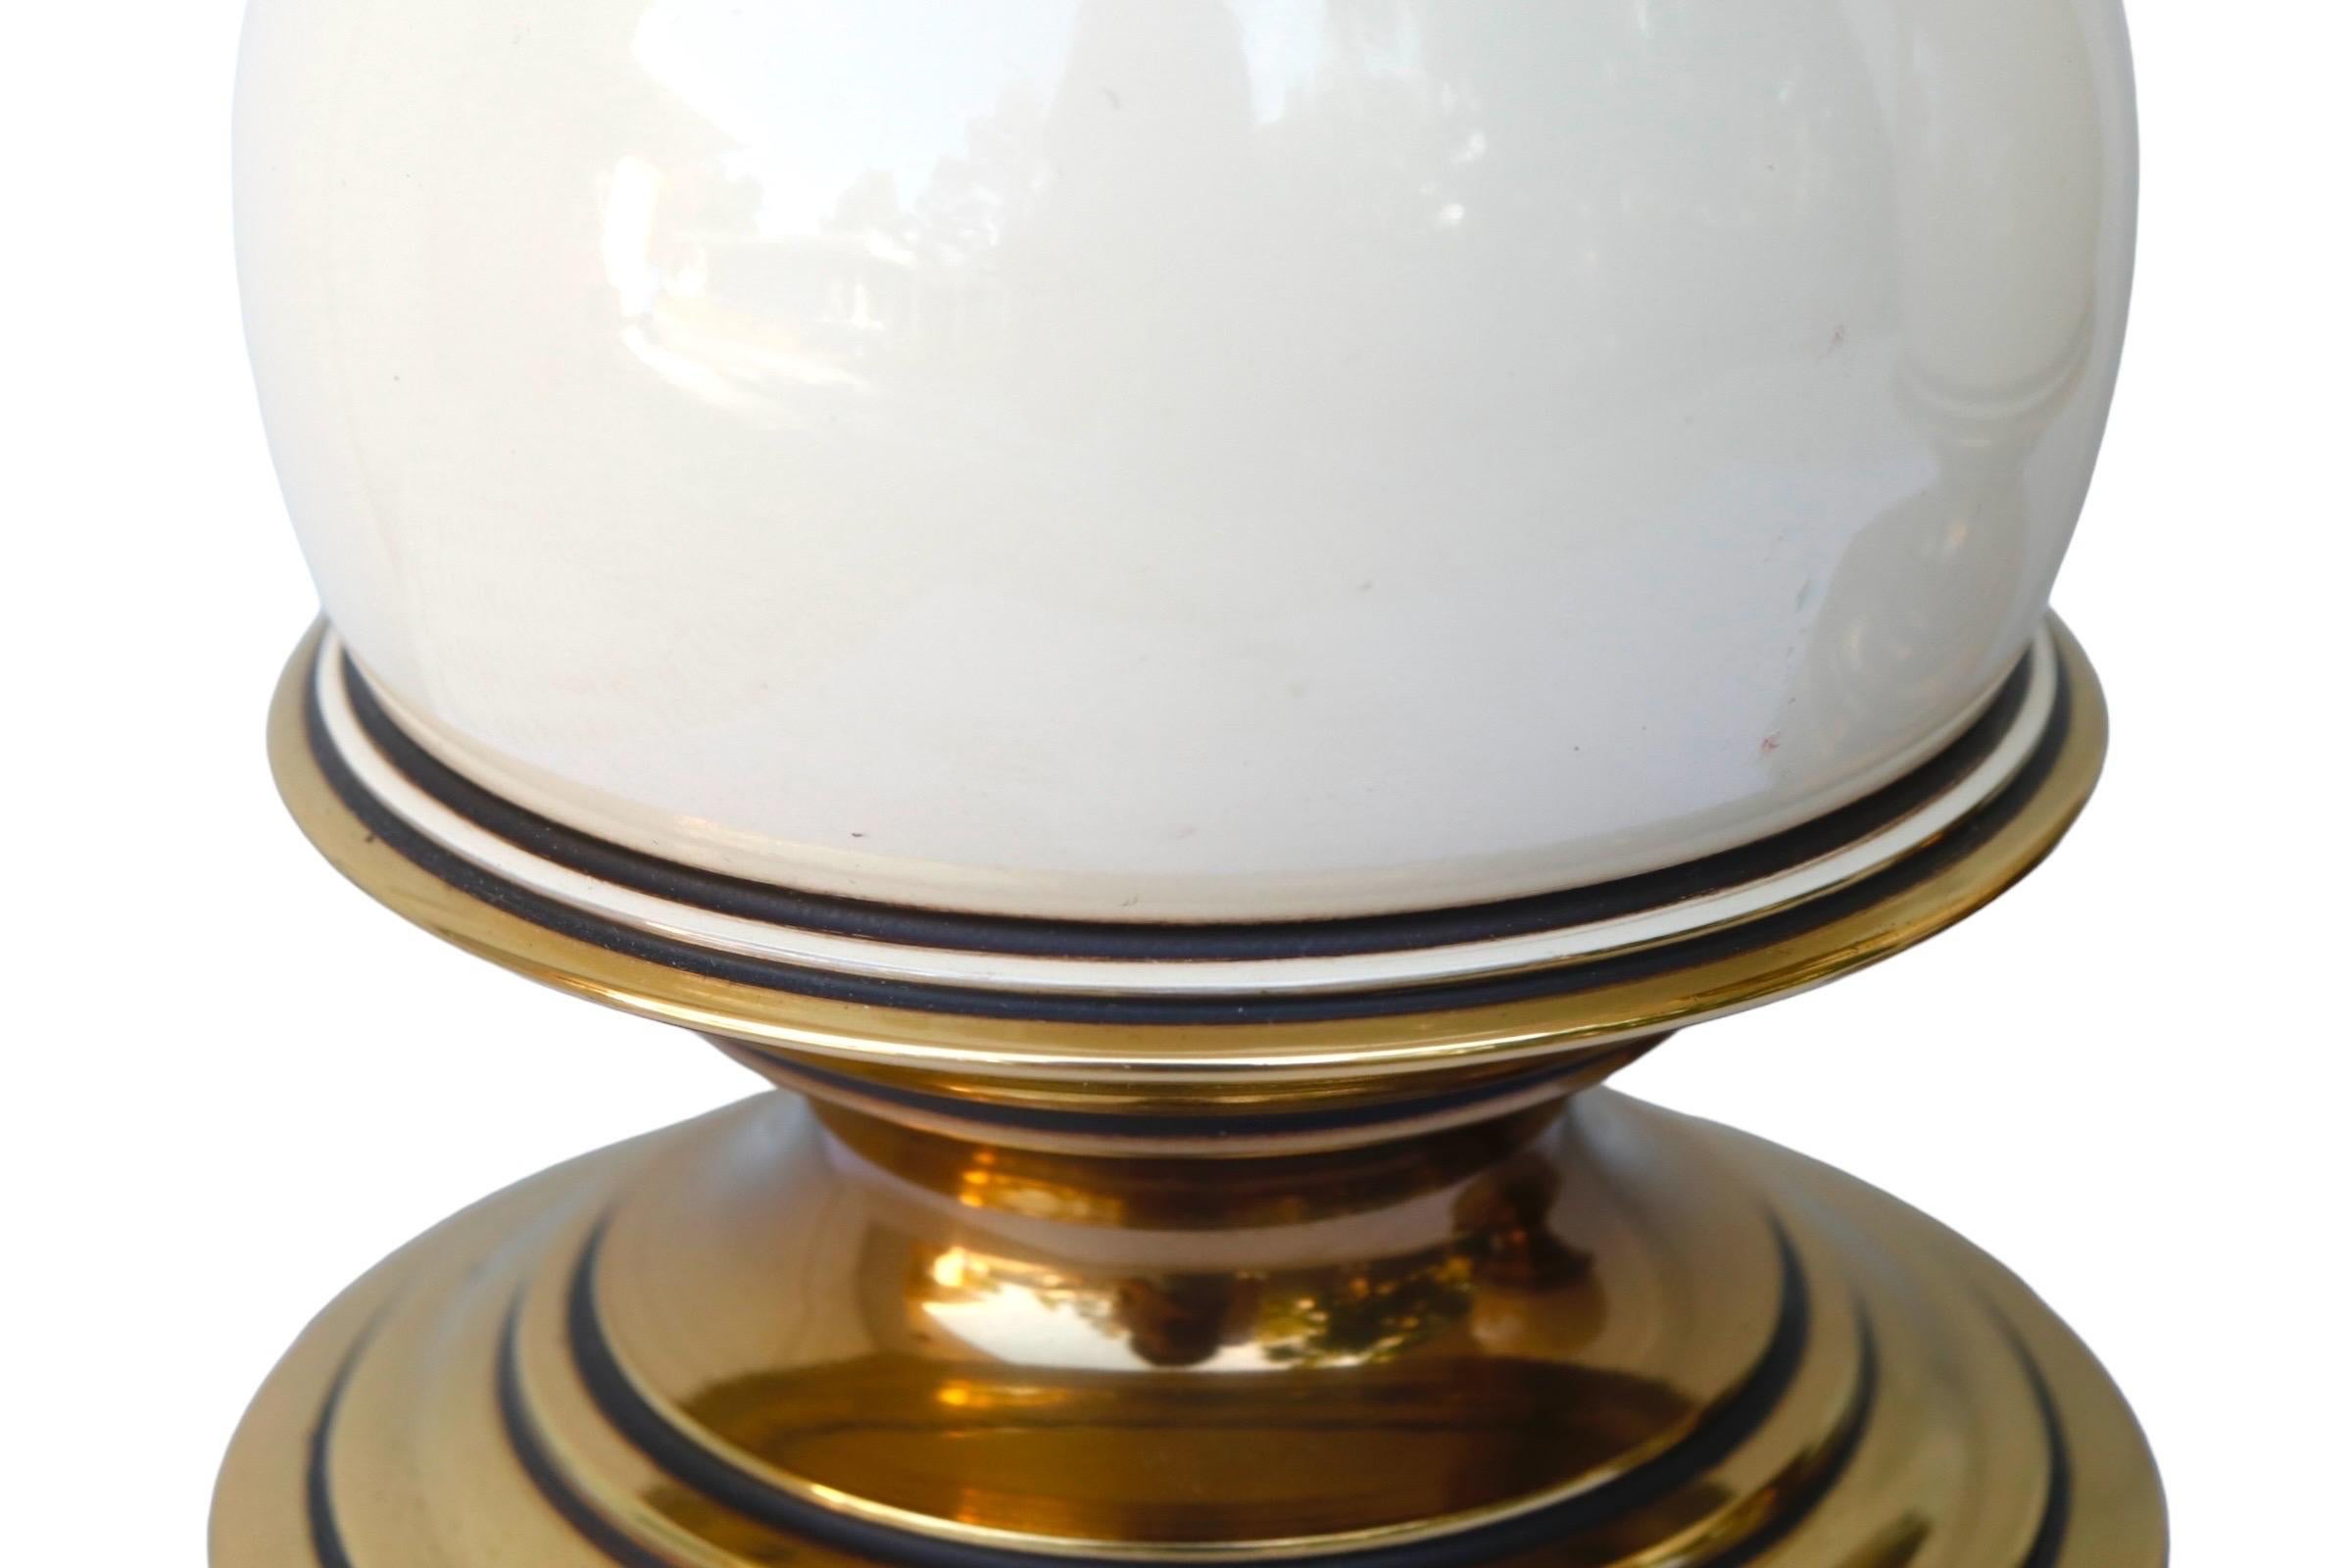 Regency Brass & Enamel Table Lamps by Stiffel - a Pair For Sale